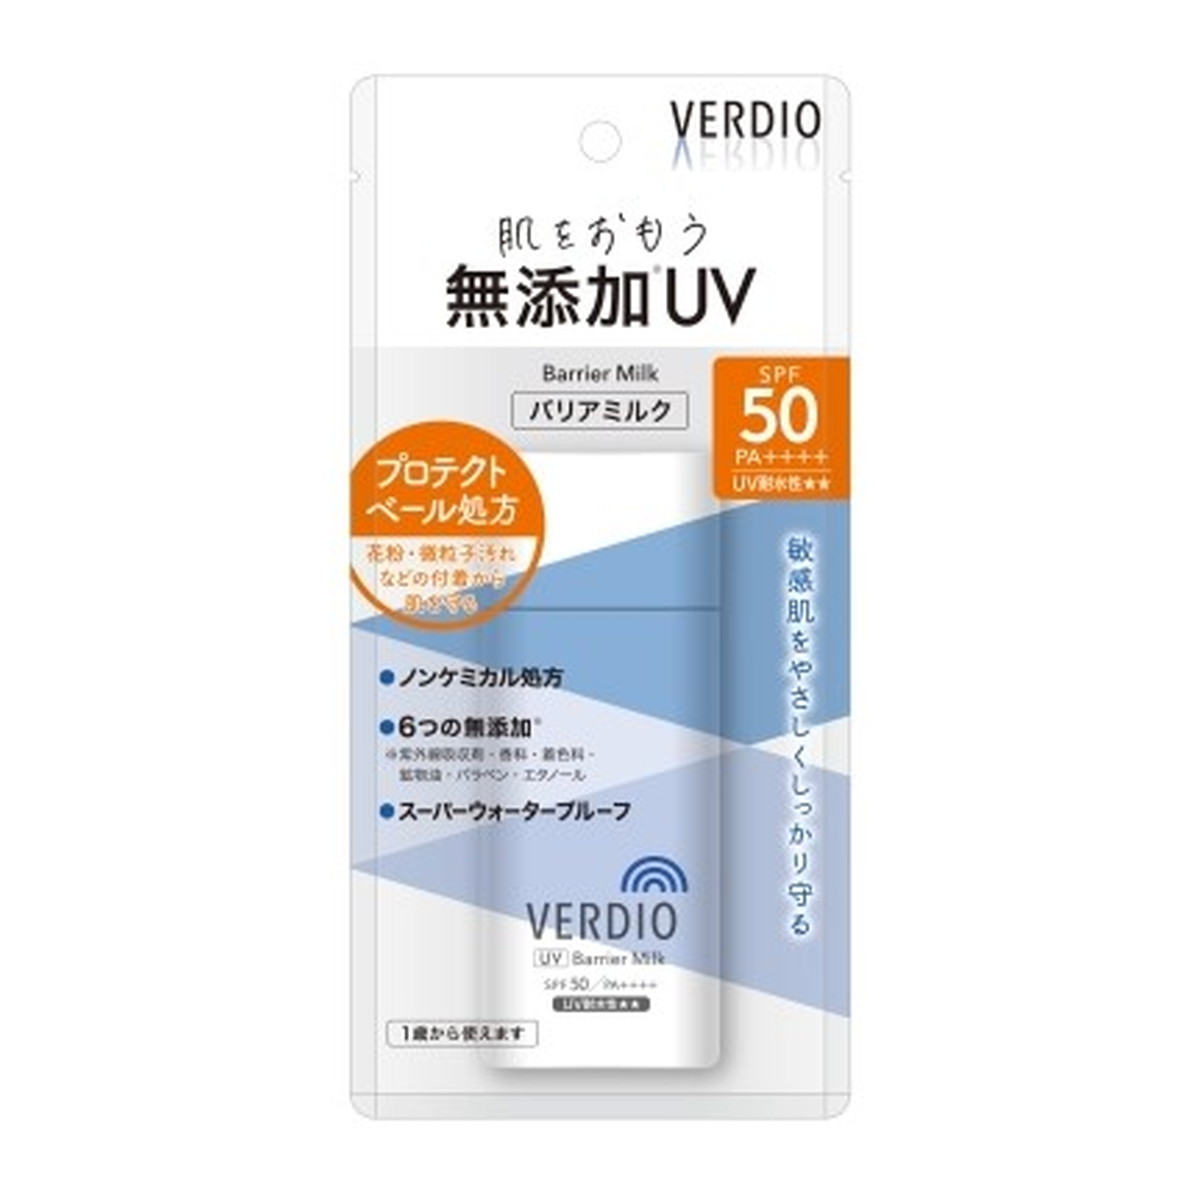 ベルディオ UV バリアミルク 80g